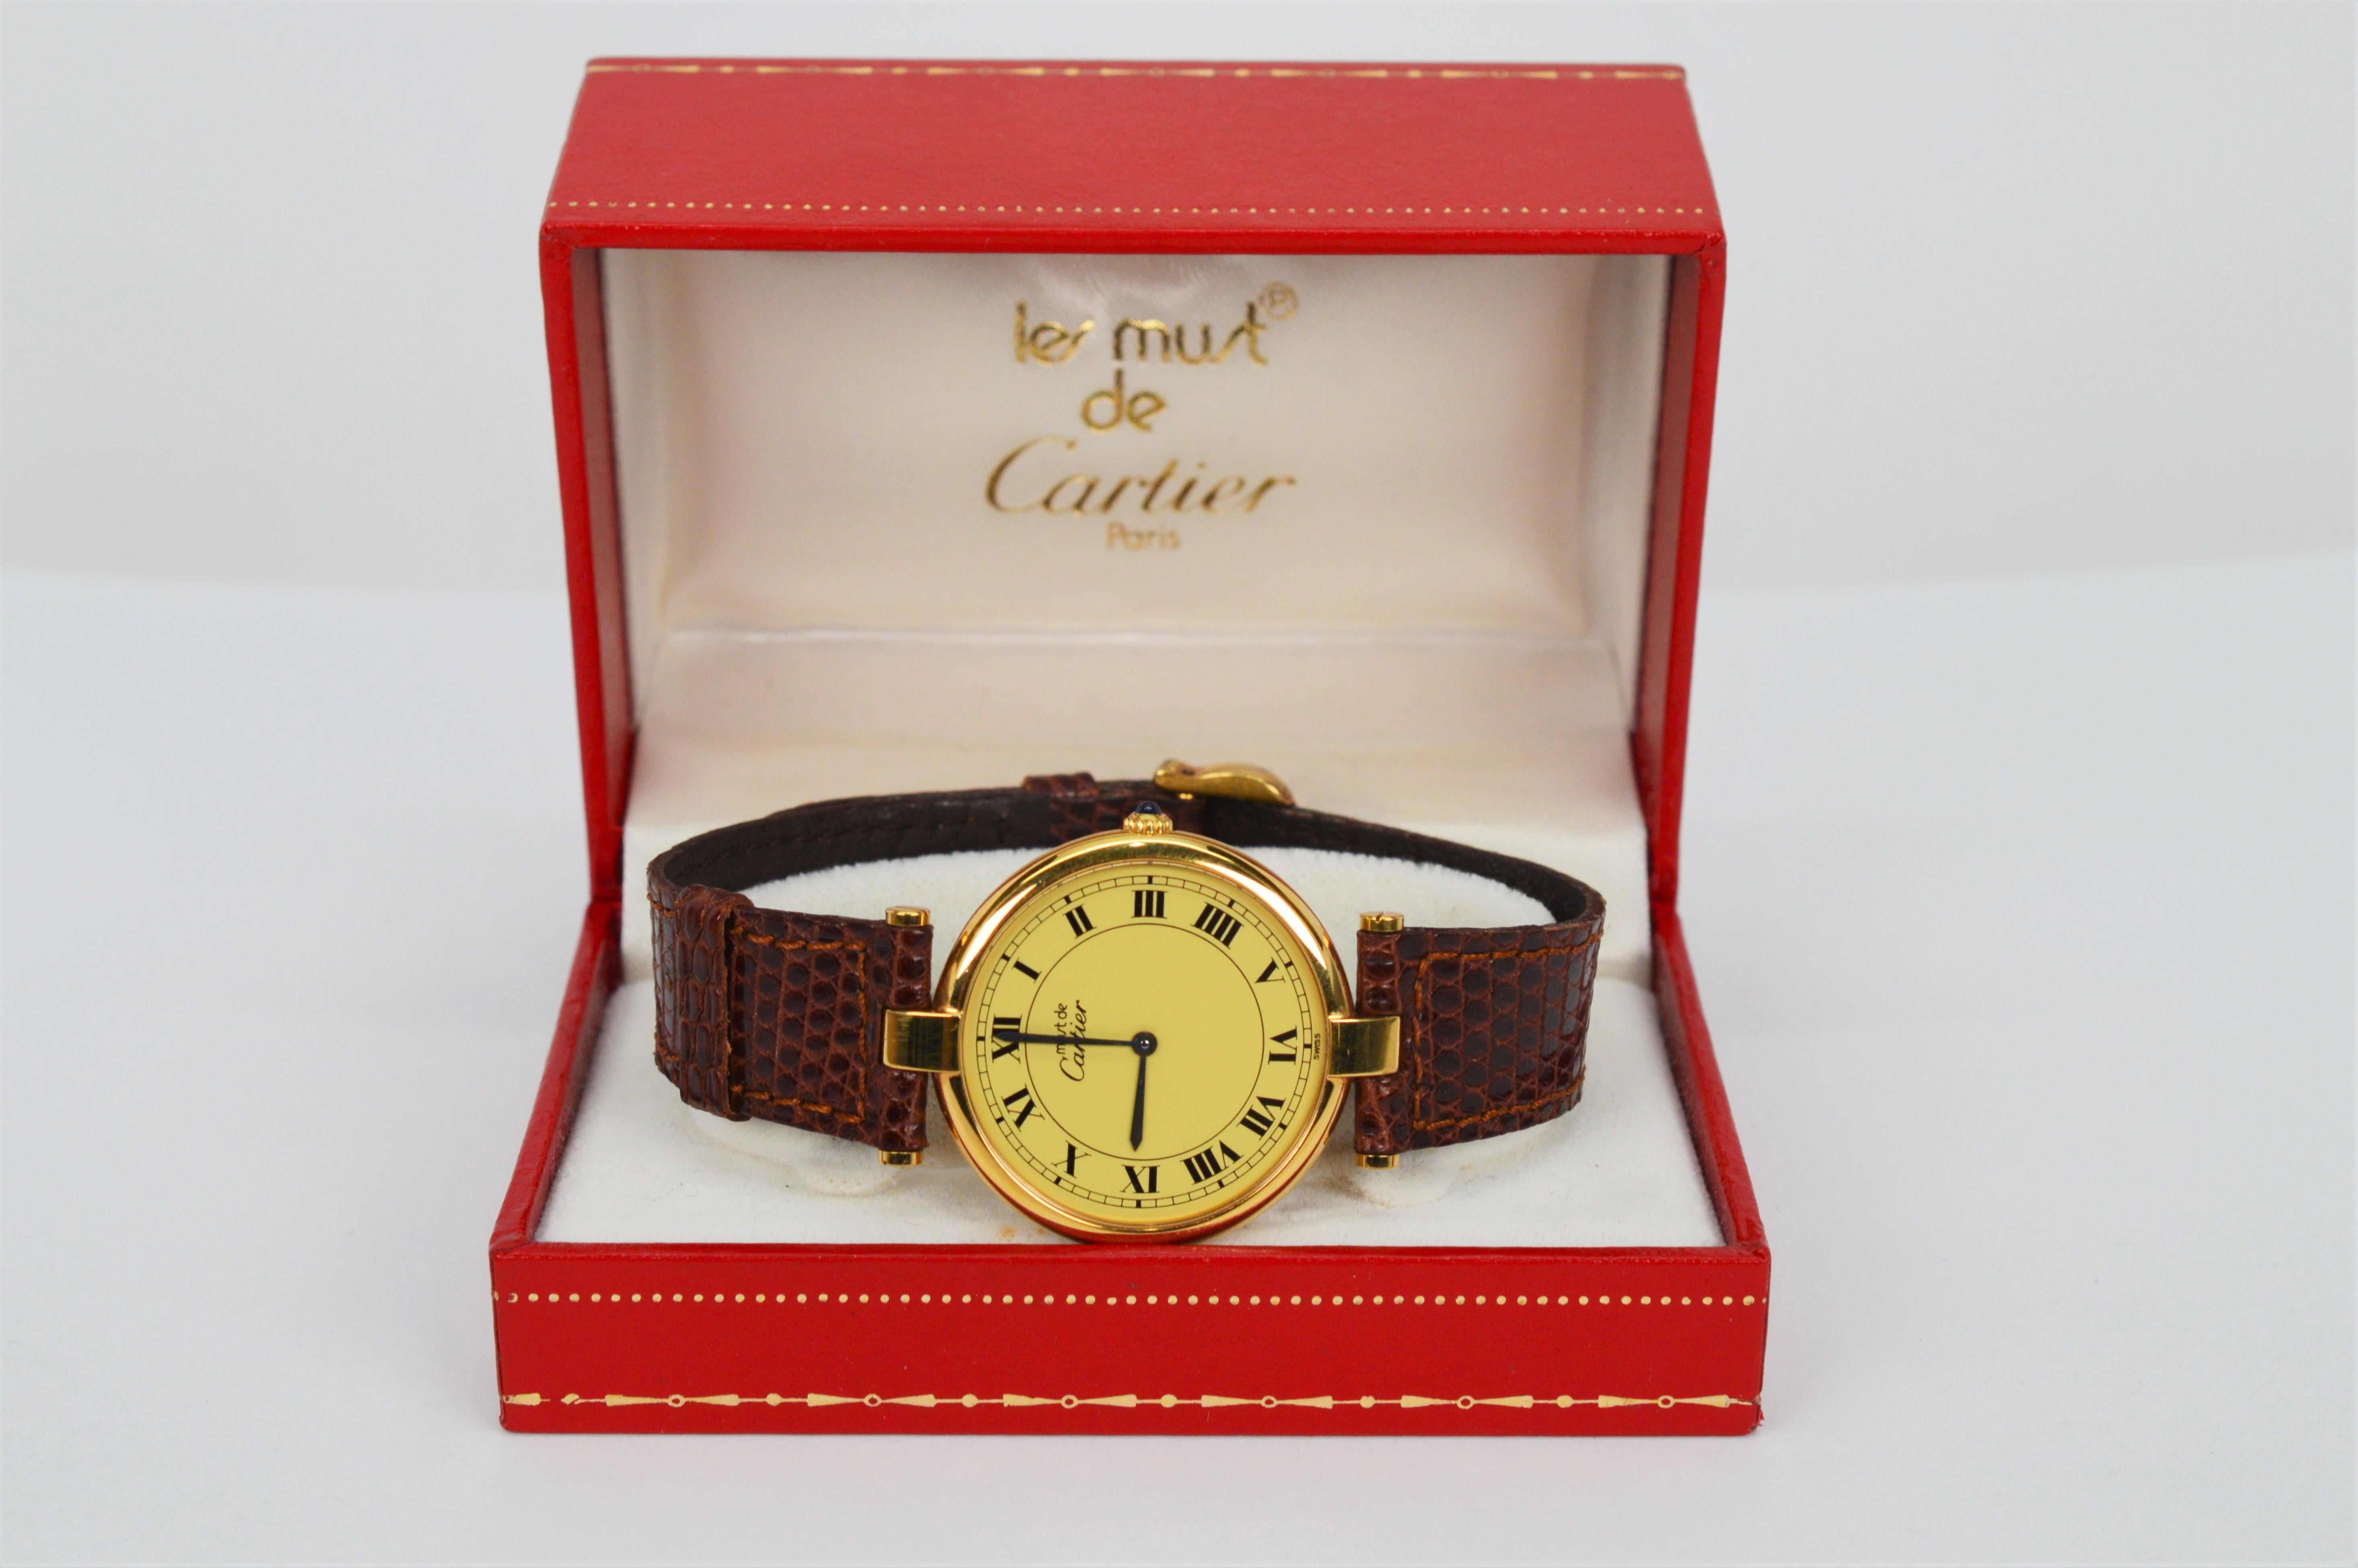 Cartier Must de Cartier Argent Plaque Oro Quartz 30mm Wrist Watch w Box Papers 8